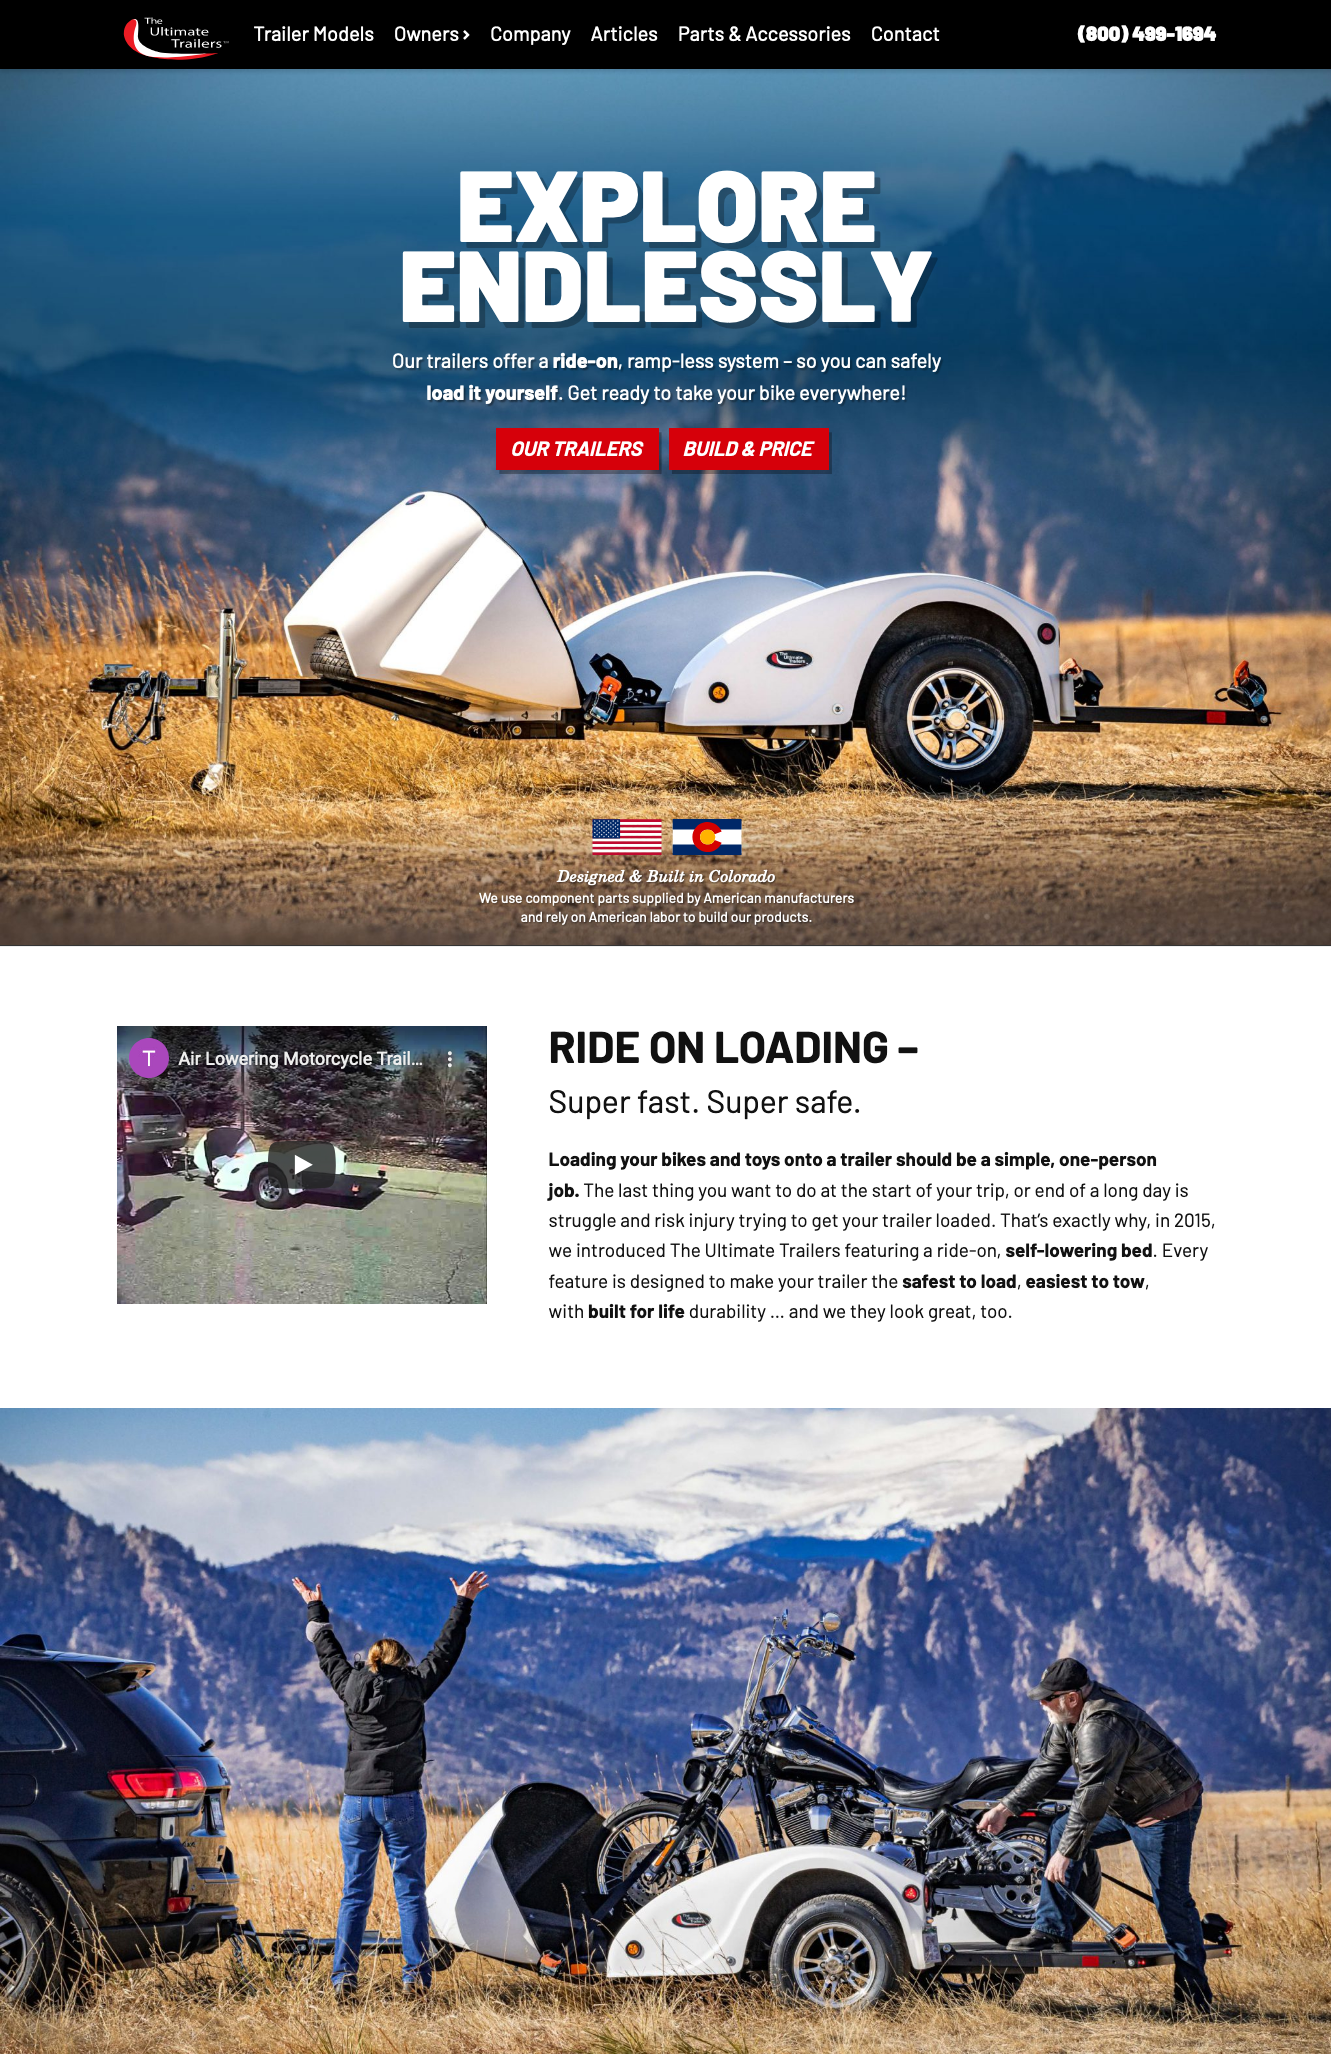 Colorado Car and Motorcycle Trailer Company Website Design